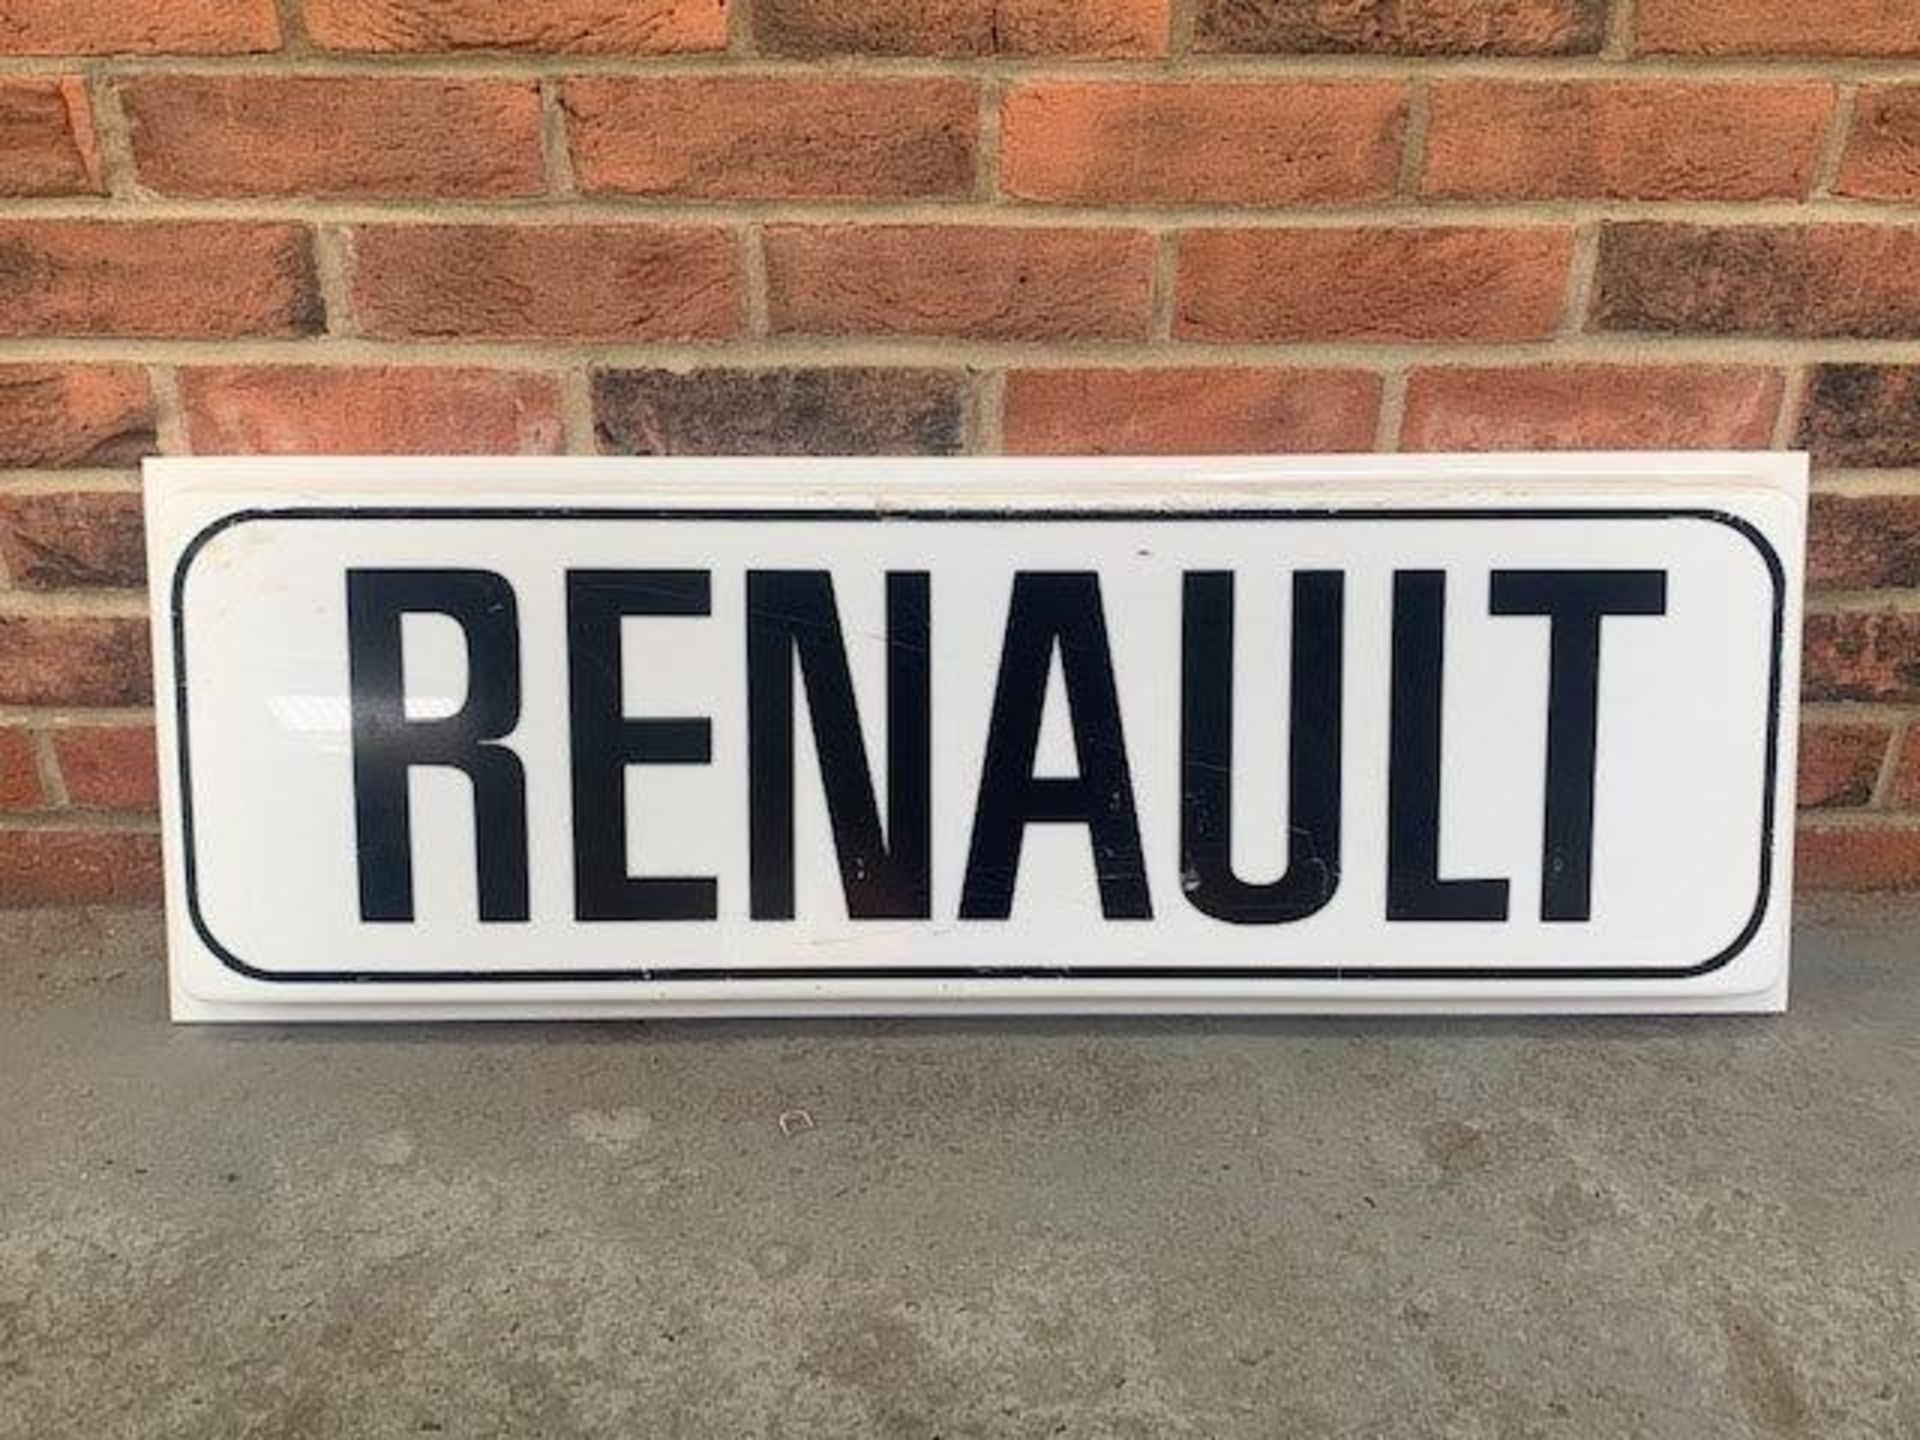 Renault Dealership sign